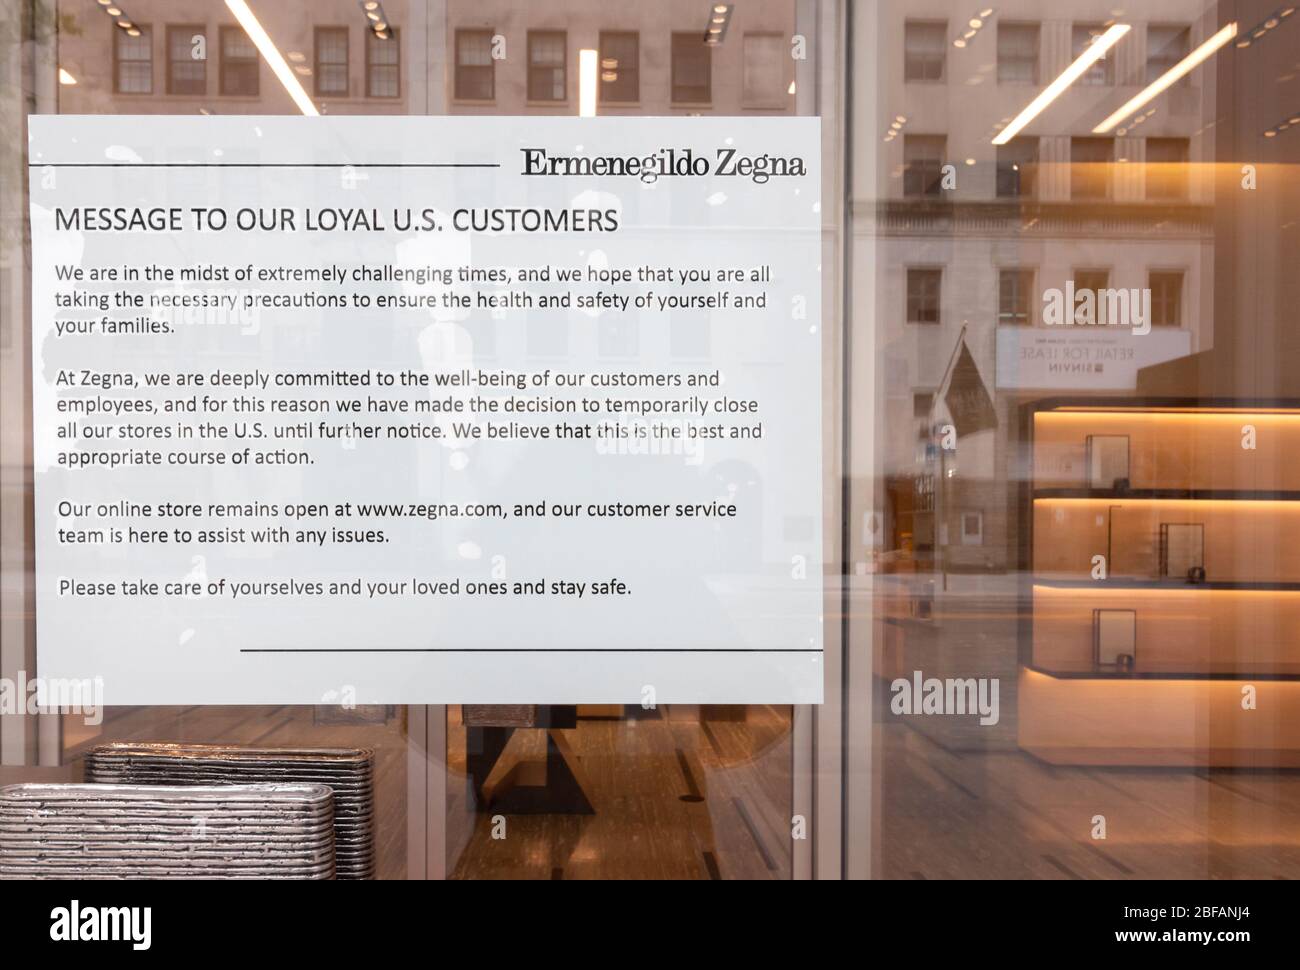 Letrero cerrado temporalmente en la tienda Ermenegildo Zegna en w 57th St., debido al coronavirus o a la pandemia de covid-19, en el fondo están los estantes vacíos Foto de stock